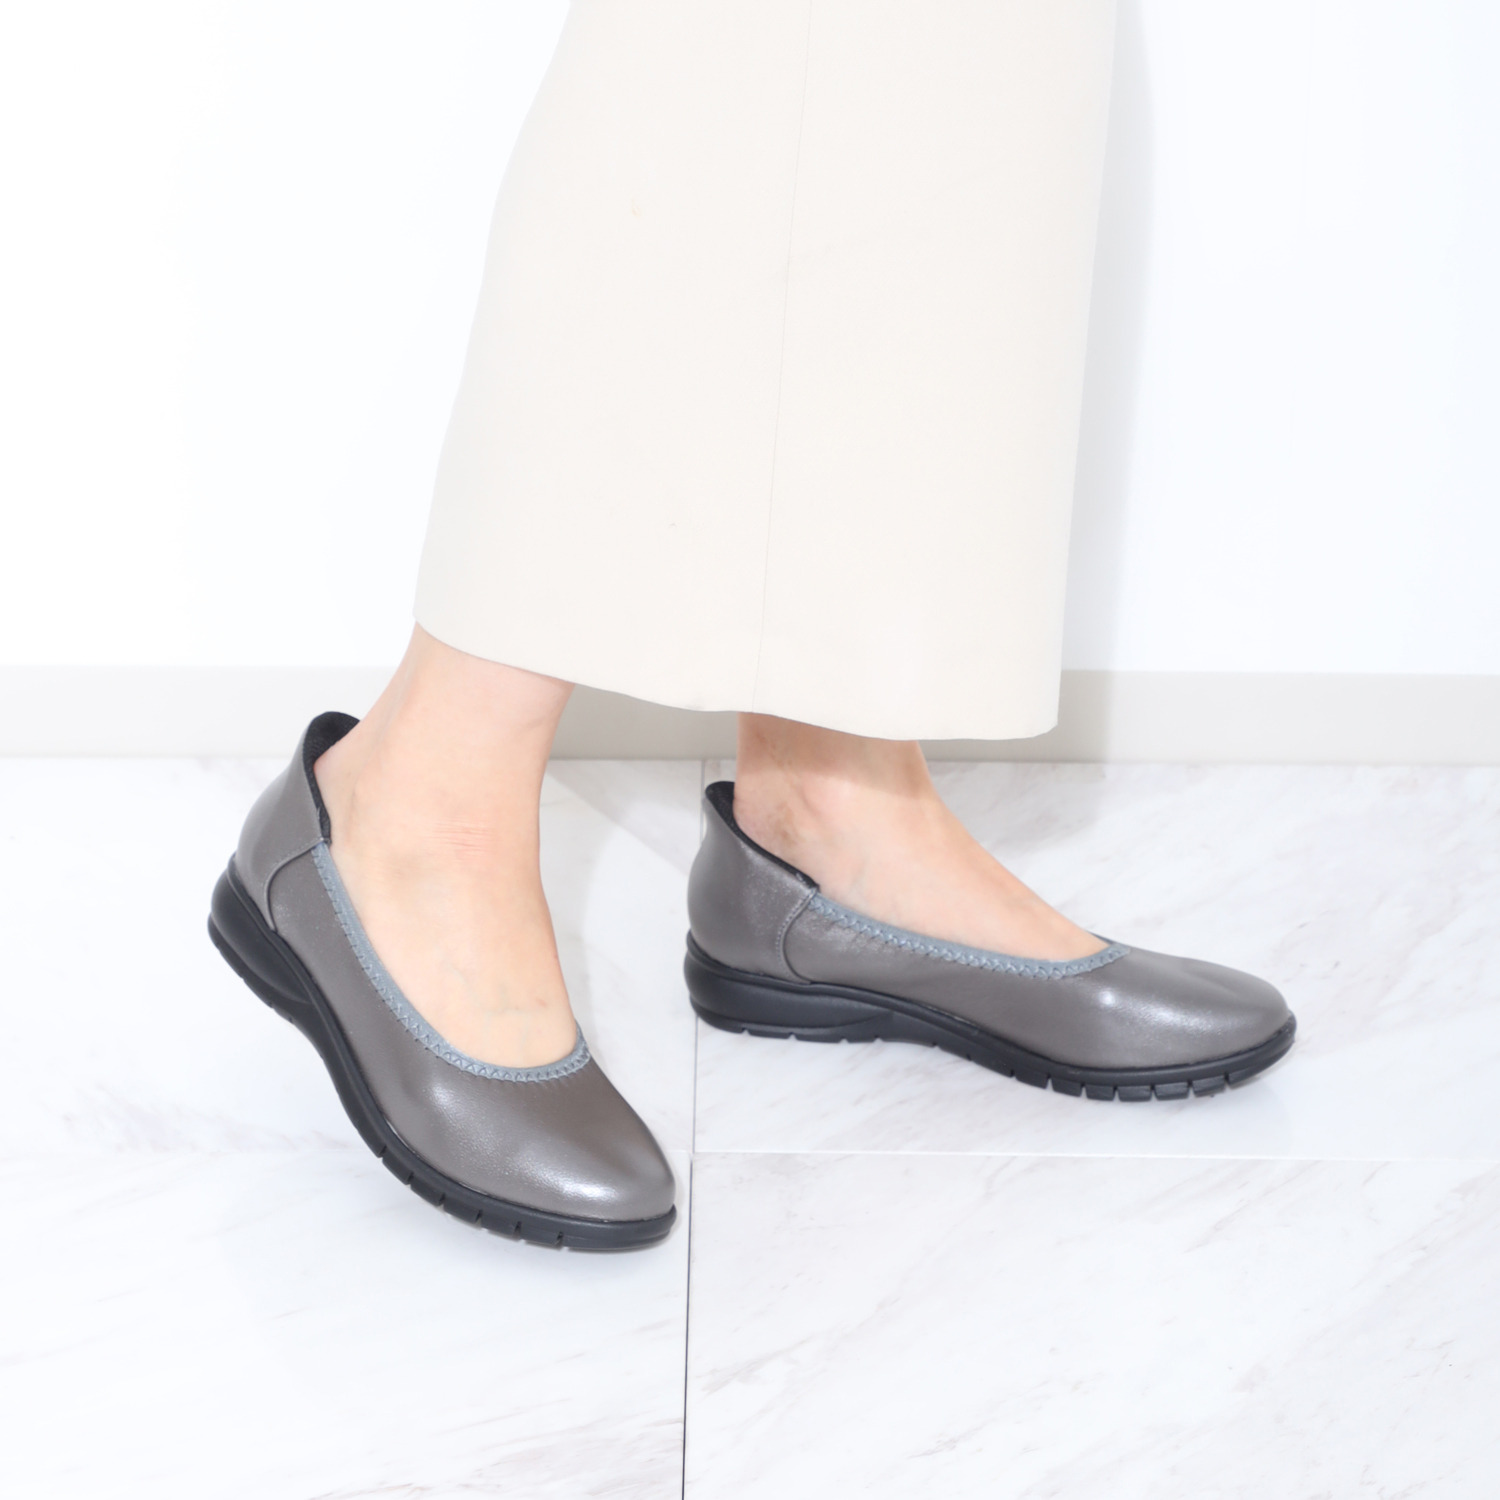 ブランコワール 靴ベラ機能で履きやすい 手を使わなくても履ける ジャパンメイド 羊革 超軽量プレーンパンプス